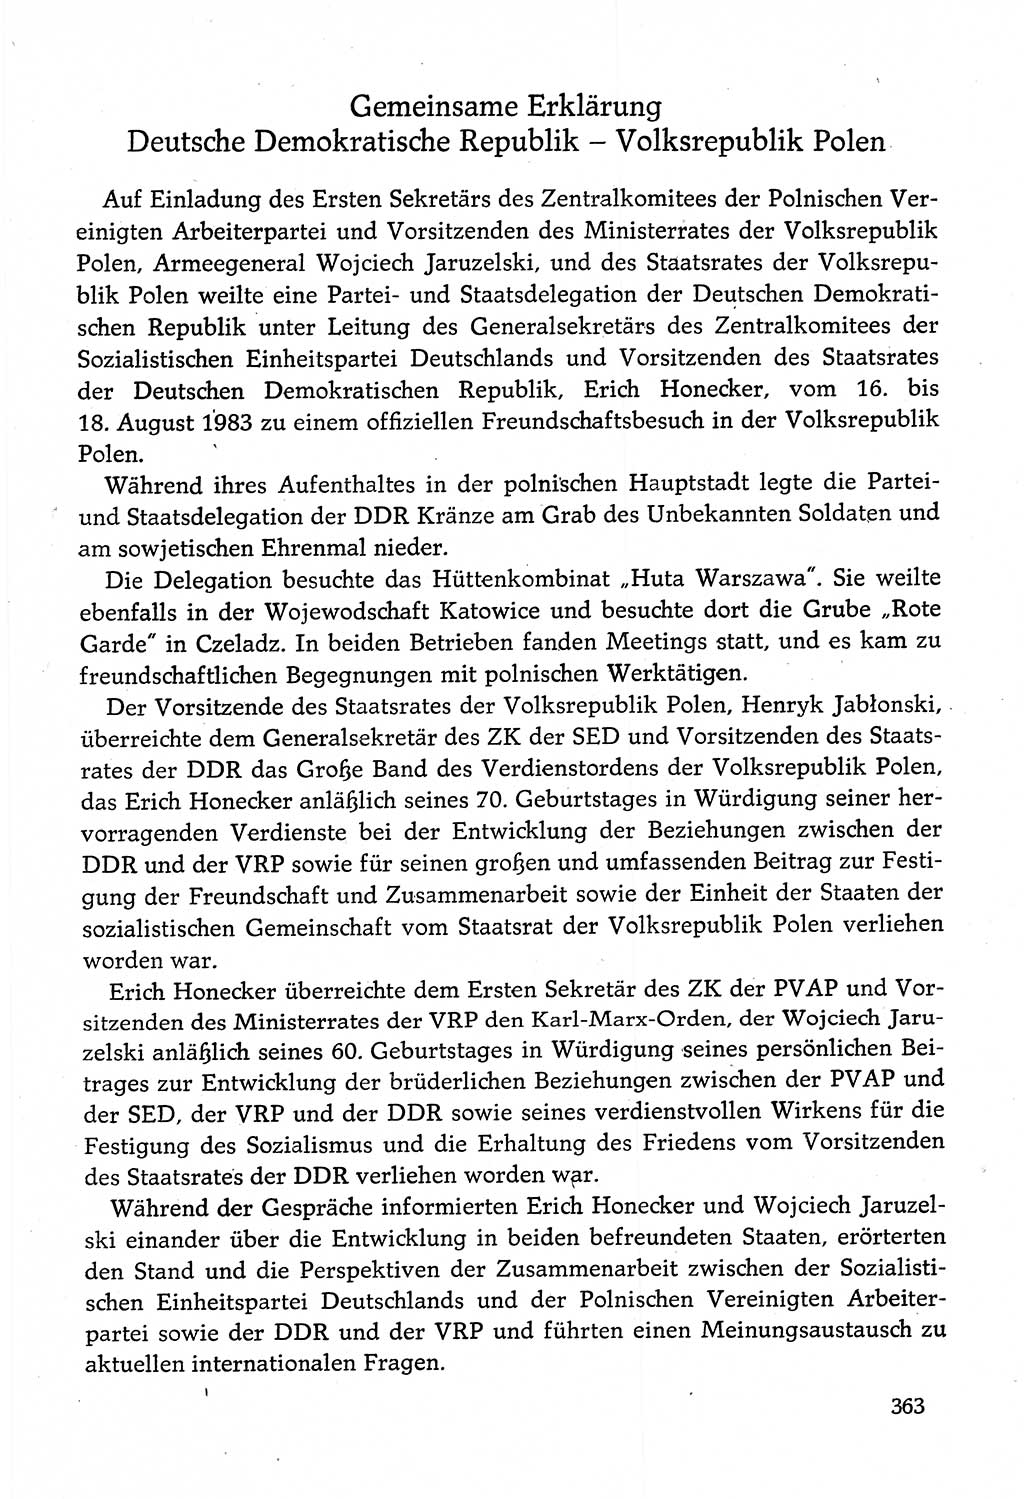 Dokumente der Sozialistischen Einheitspartei Deutschlands (SED) [Deutsche Demokratische Republik (DDR)] 1982-1983, Seite 363 (Dok. SED DDR 1982-1983, S. 363)